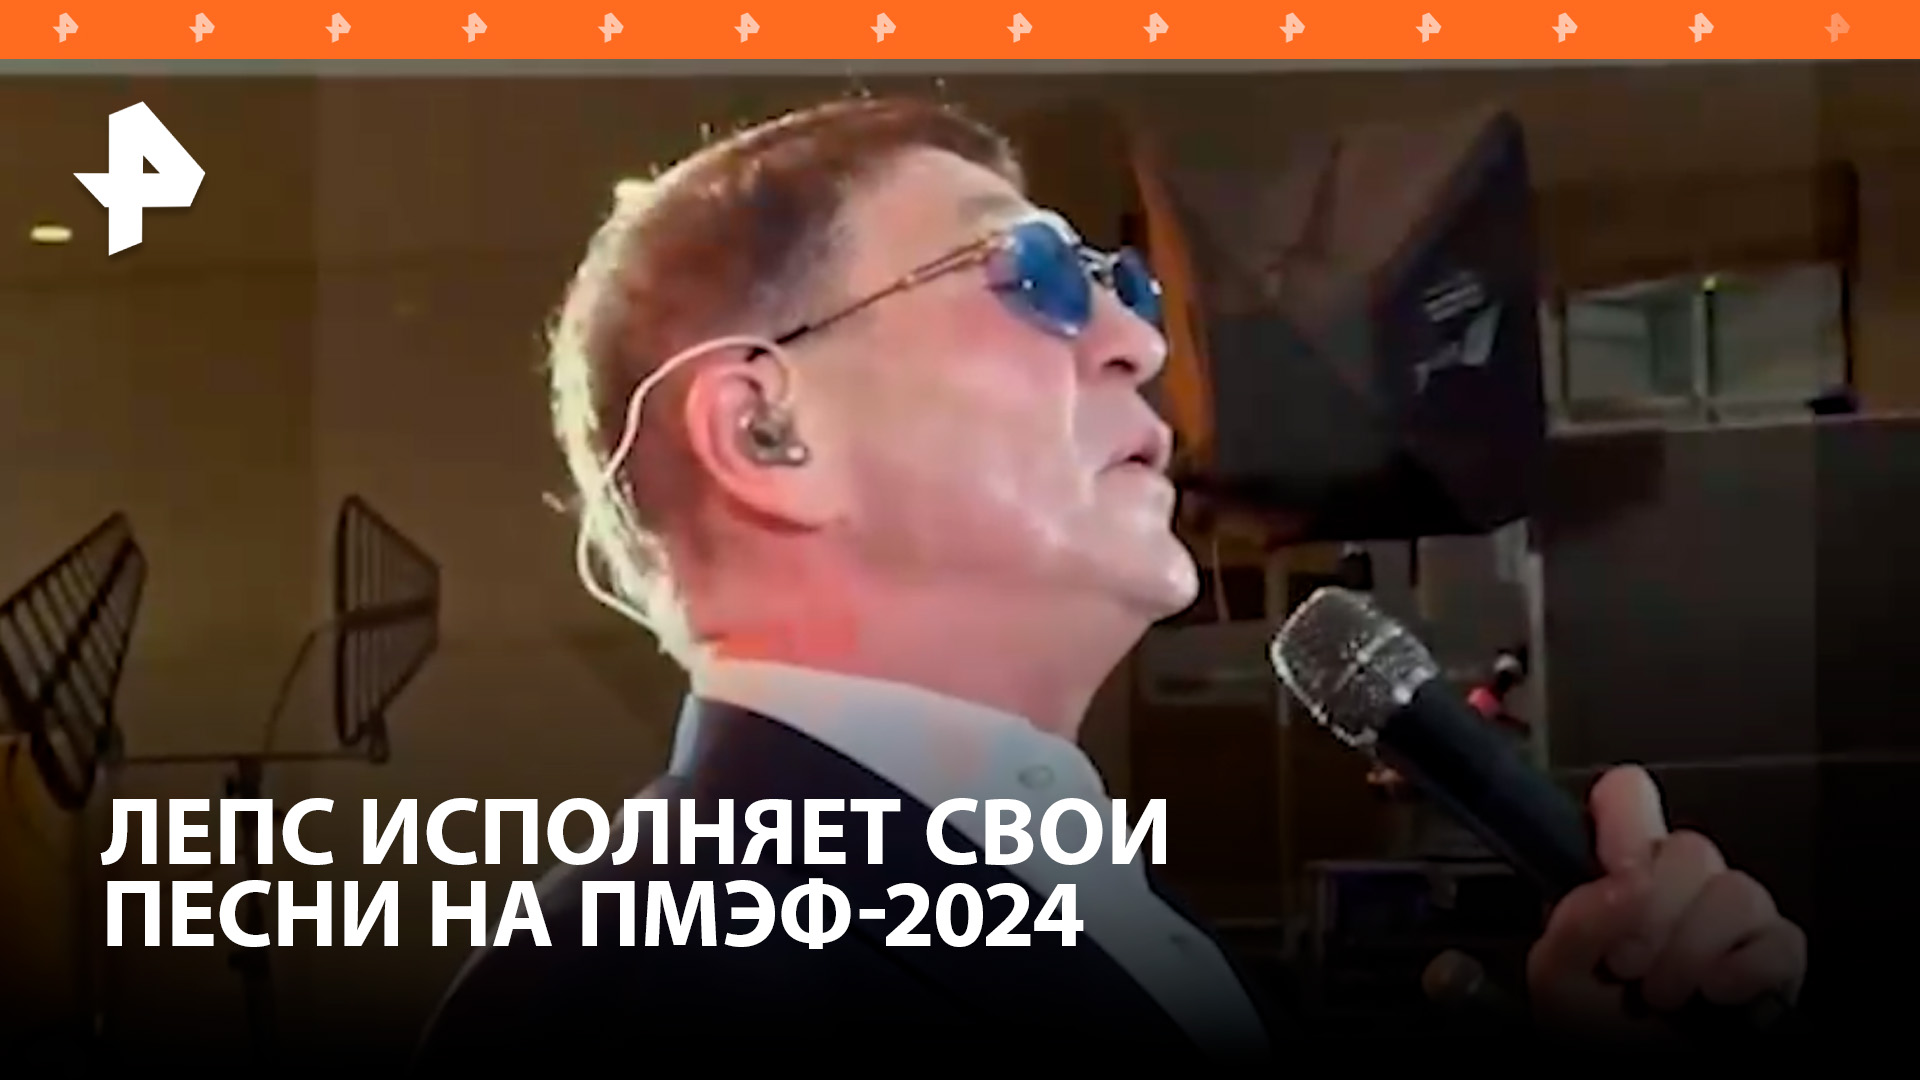 Счастливый, как никто: Григорий Лепс исполняет свои песни на приеме Русской Медиагруппы на ПМЭФ-2024